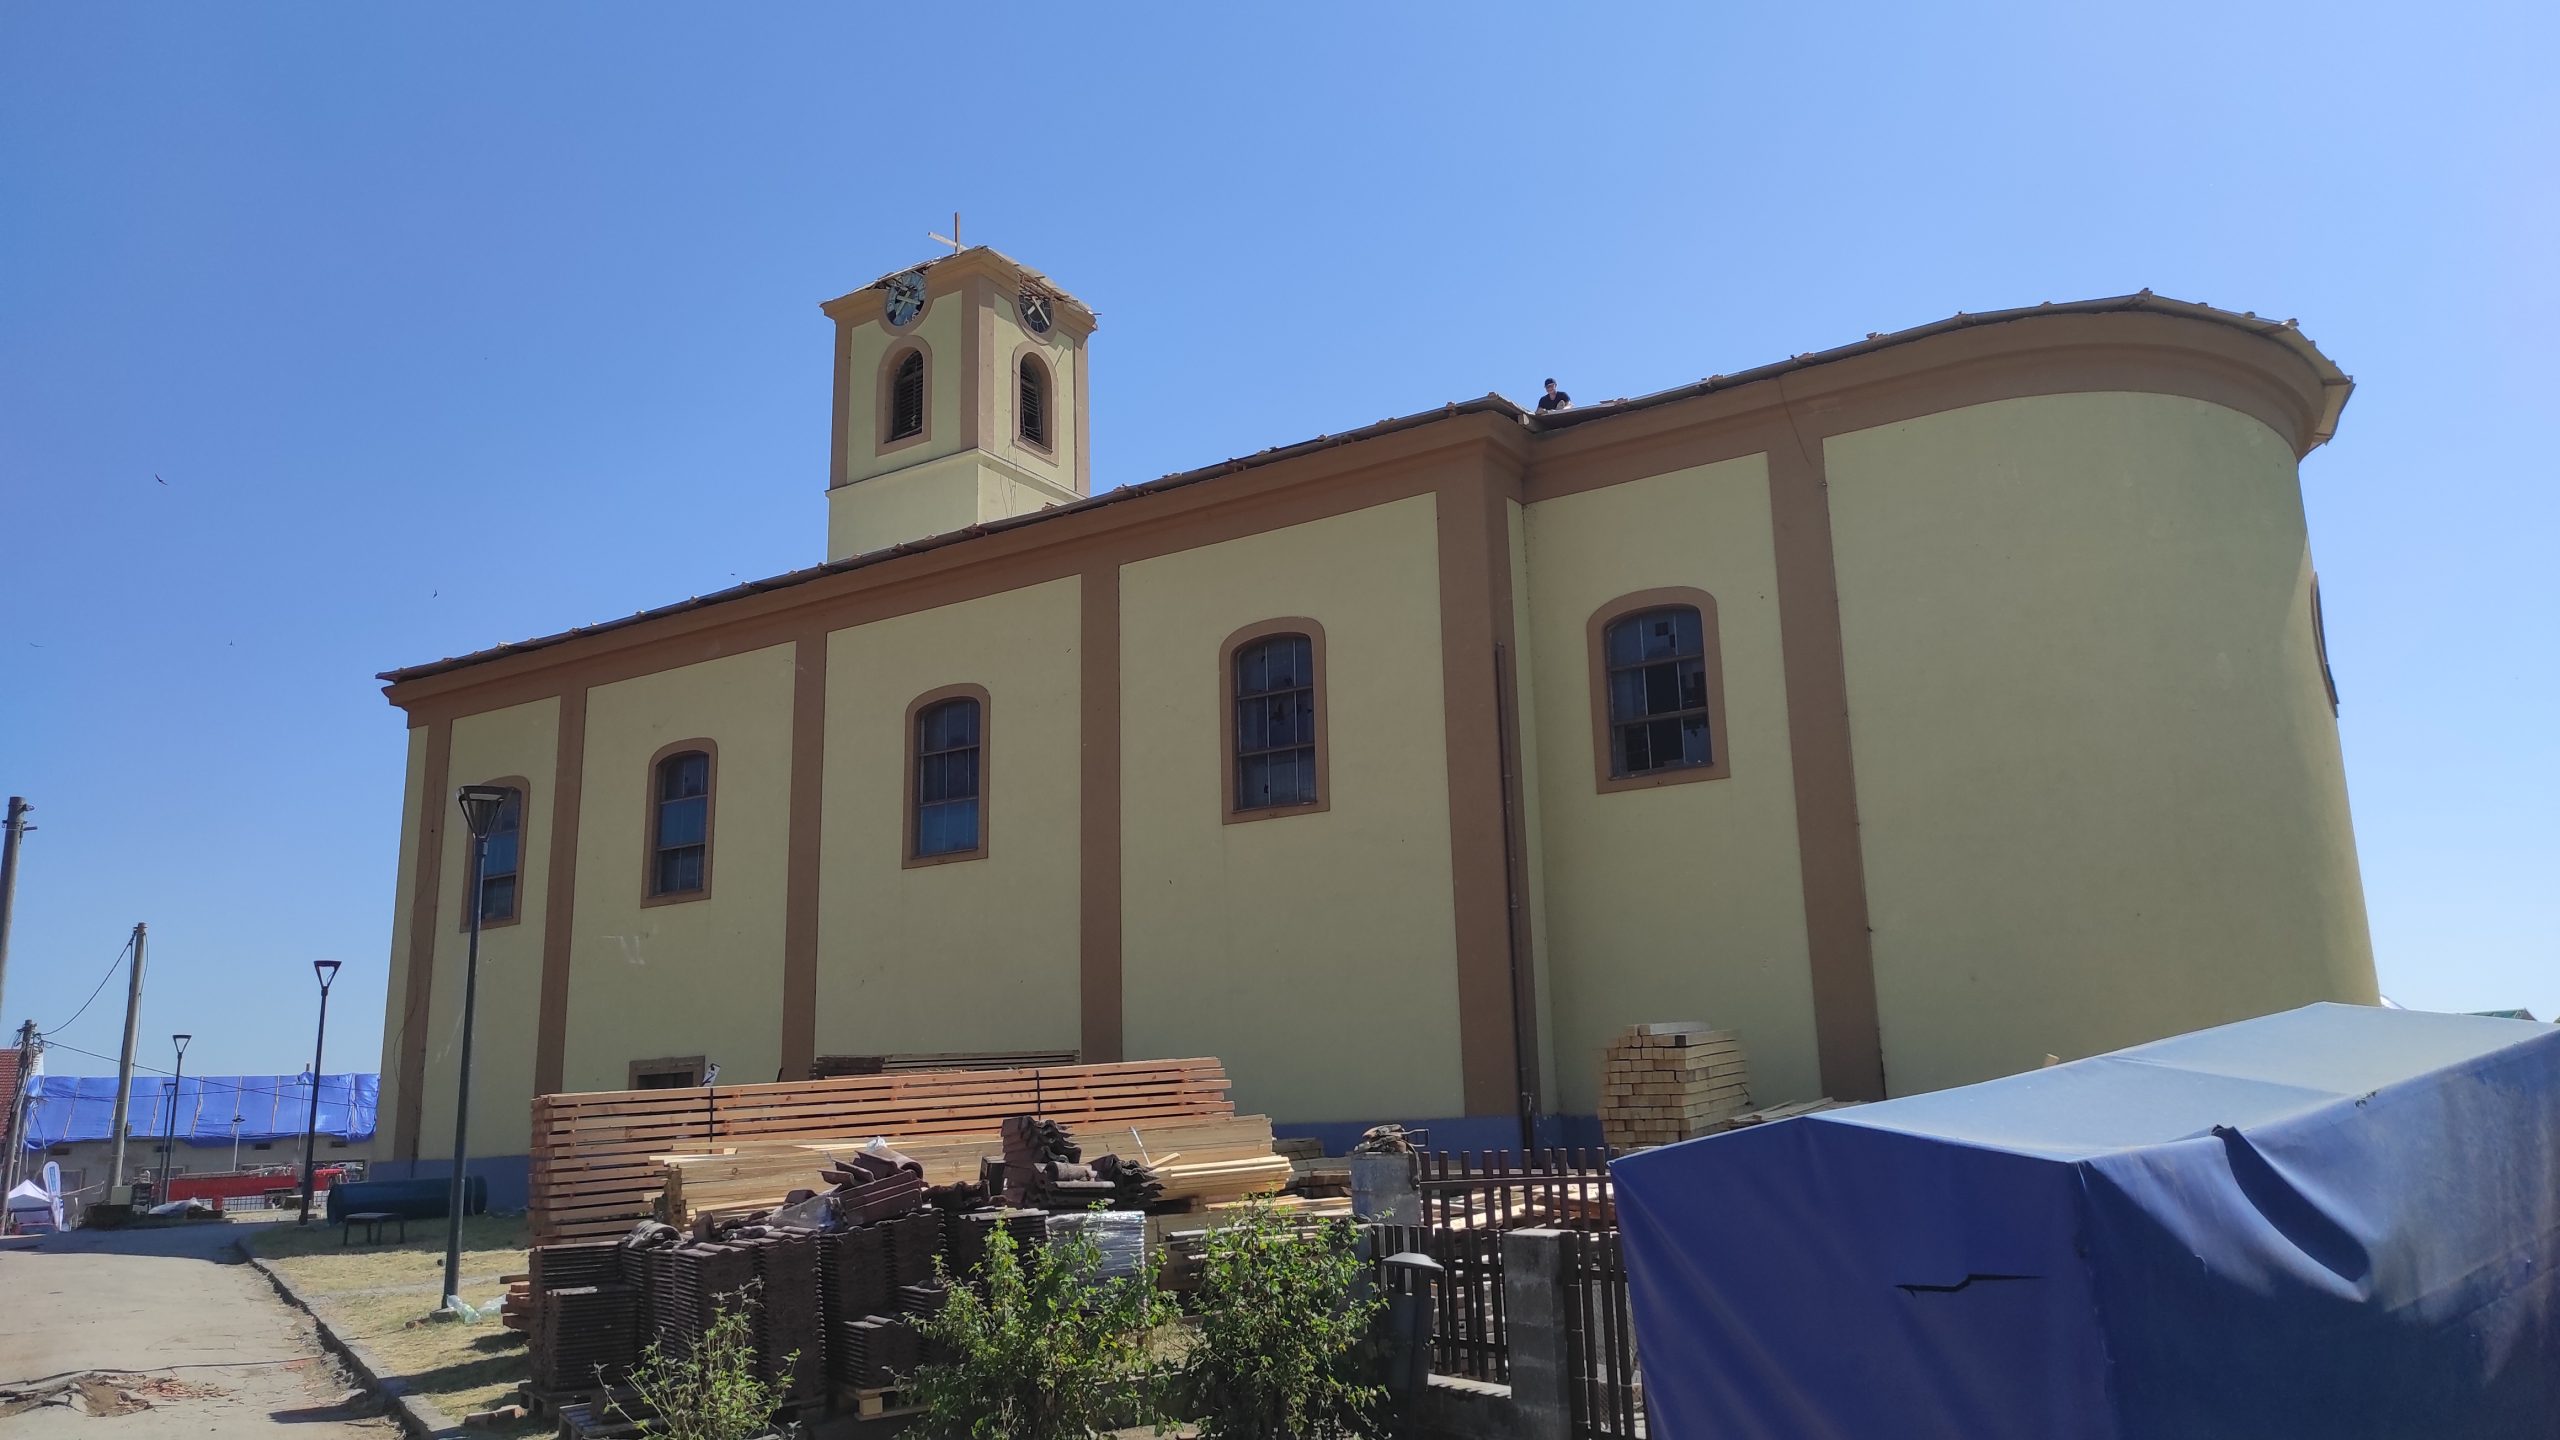 Kostel v Moravské Nové Vsi je po přírodní katastrofě znovu oživen novými hliníkovými okny